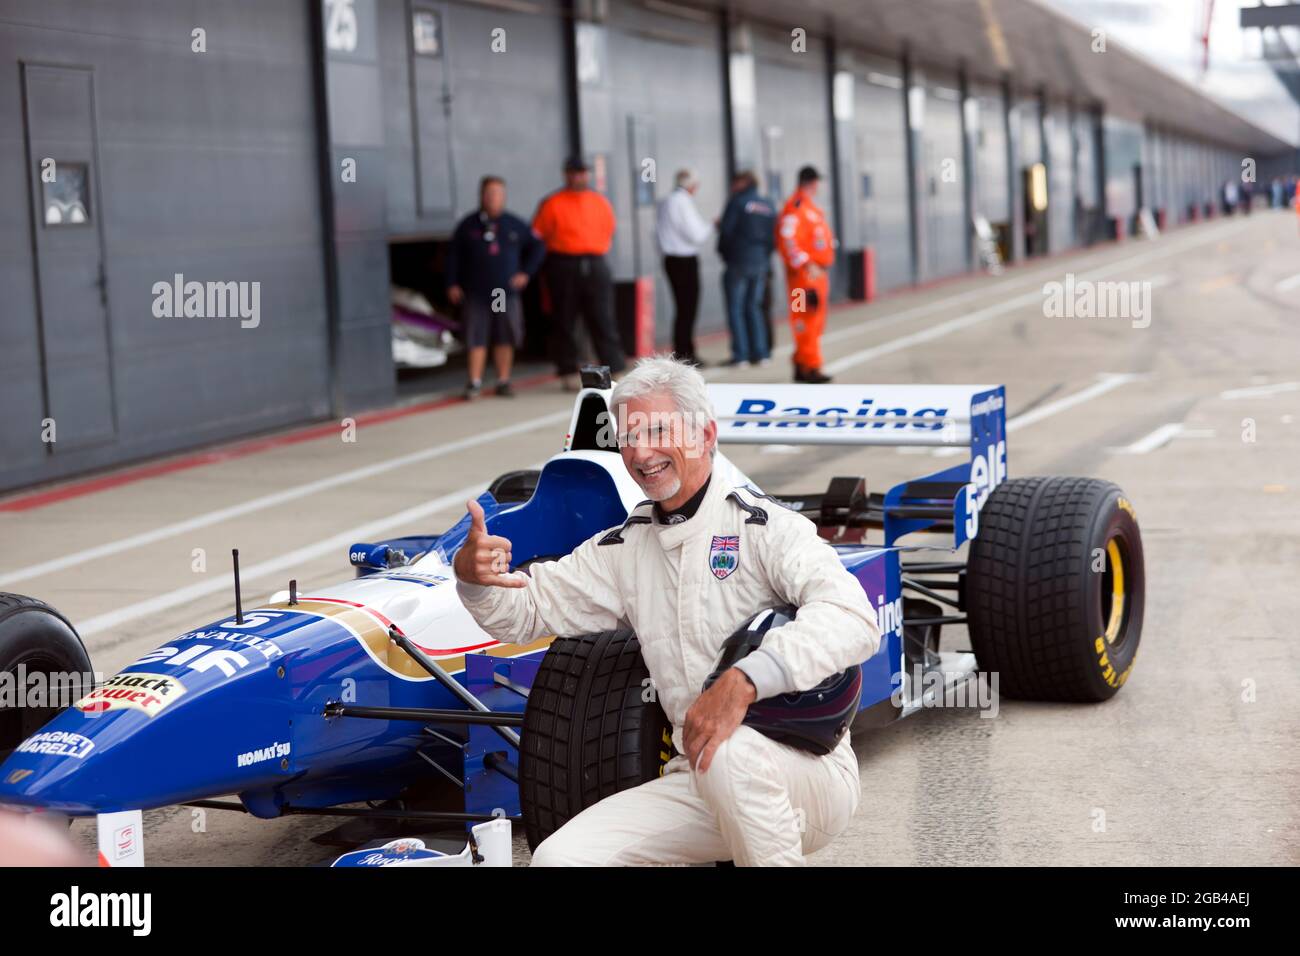 Damon Hill in posa accanto al suo Campionato del mondo vincendo la Williams FW18 Formula One Car, dopo aver eseguito diversi giri dimostrativi ad alta velocità del circuito, al Silverstone Classic 2021 Foto Stock